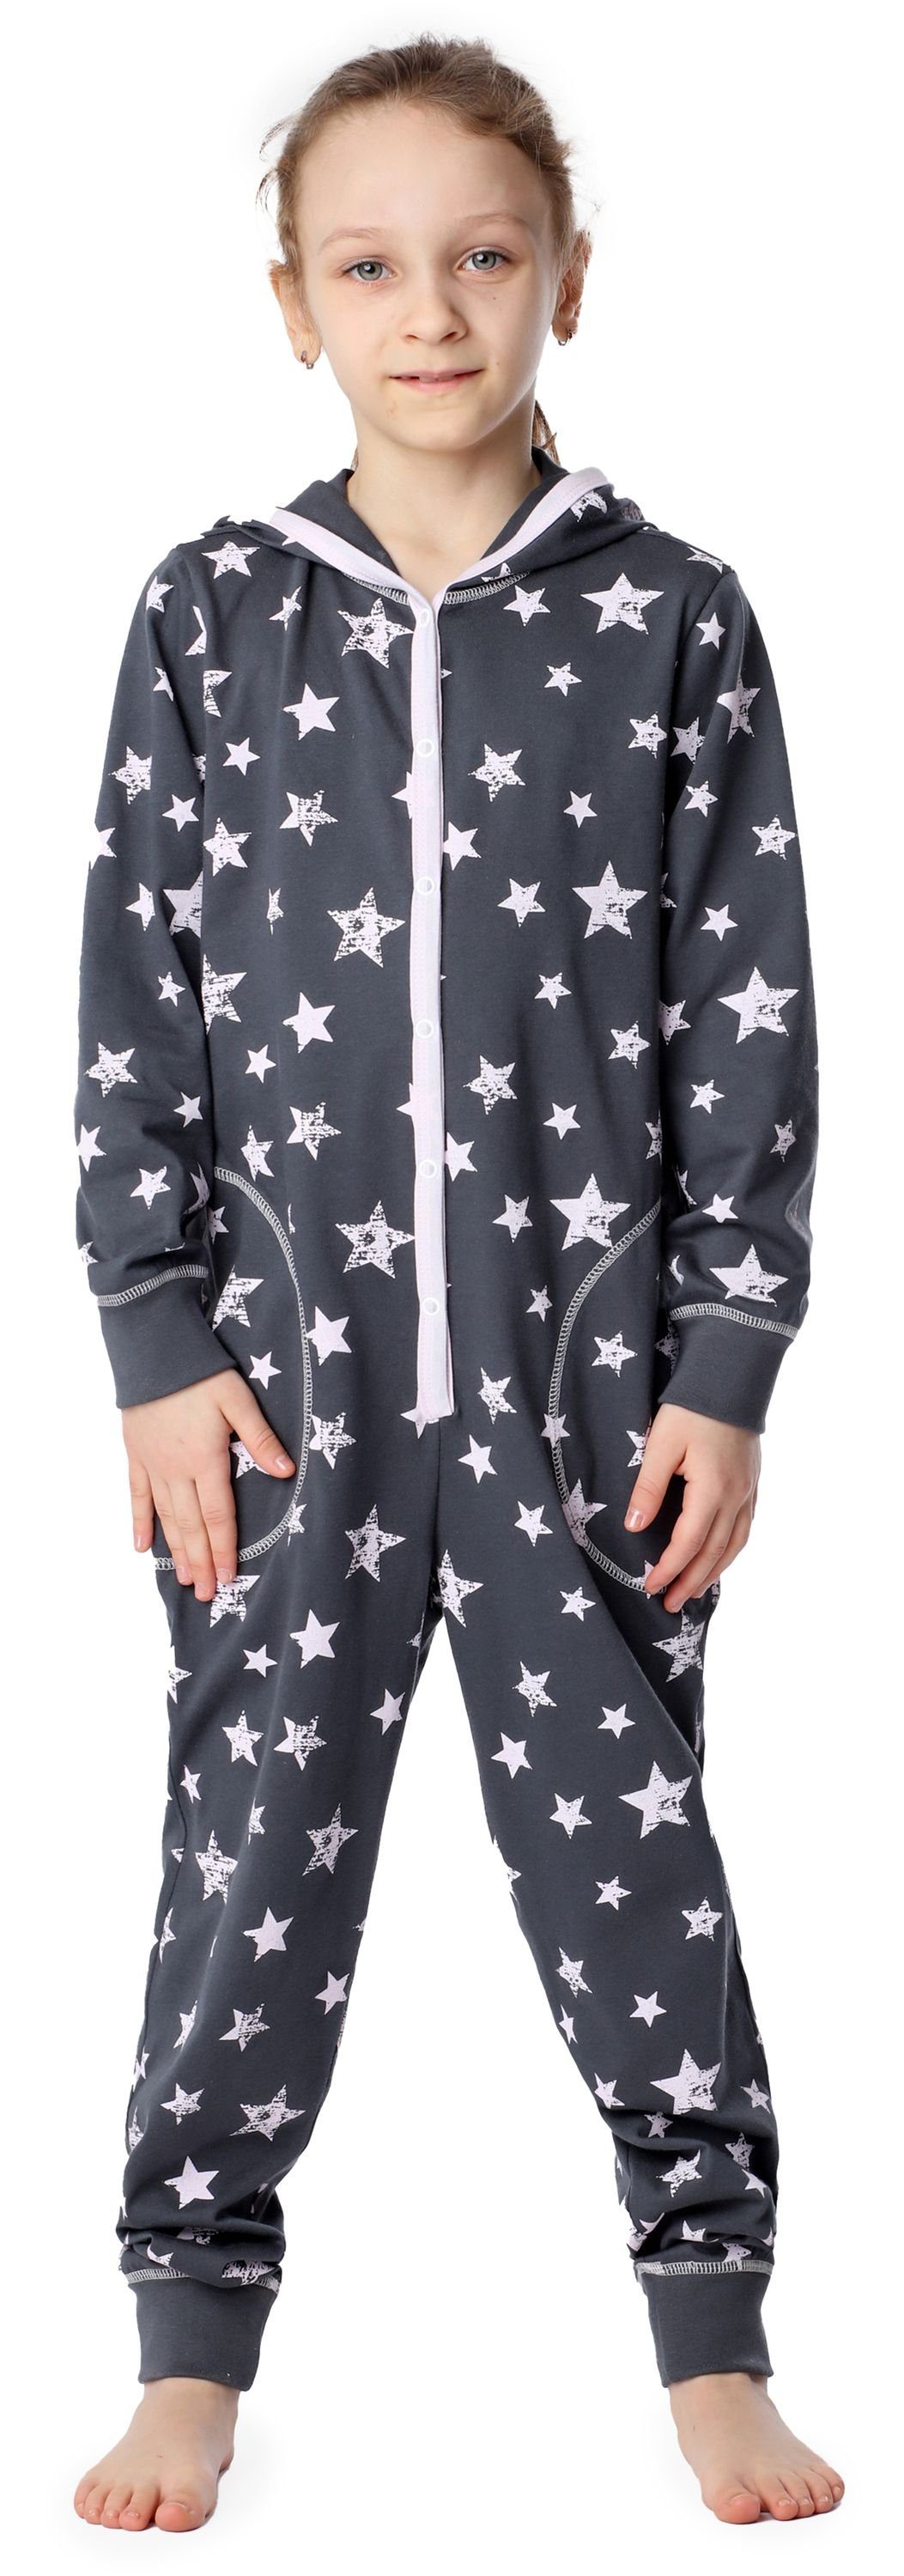 Sterne Style Kapuze MS10-223 Rosa Mädchen Merry mit Schlafanzug Schlafoverall Grau